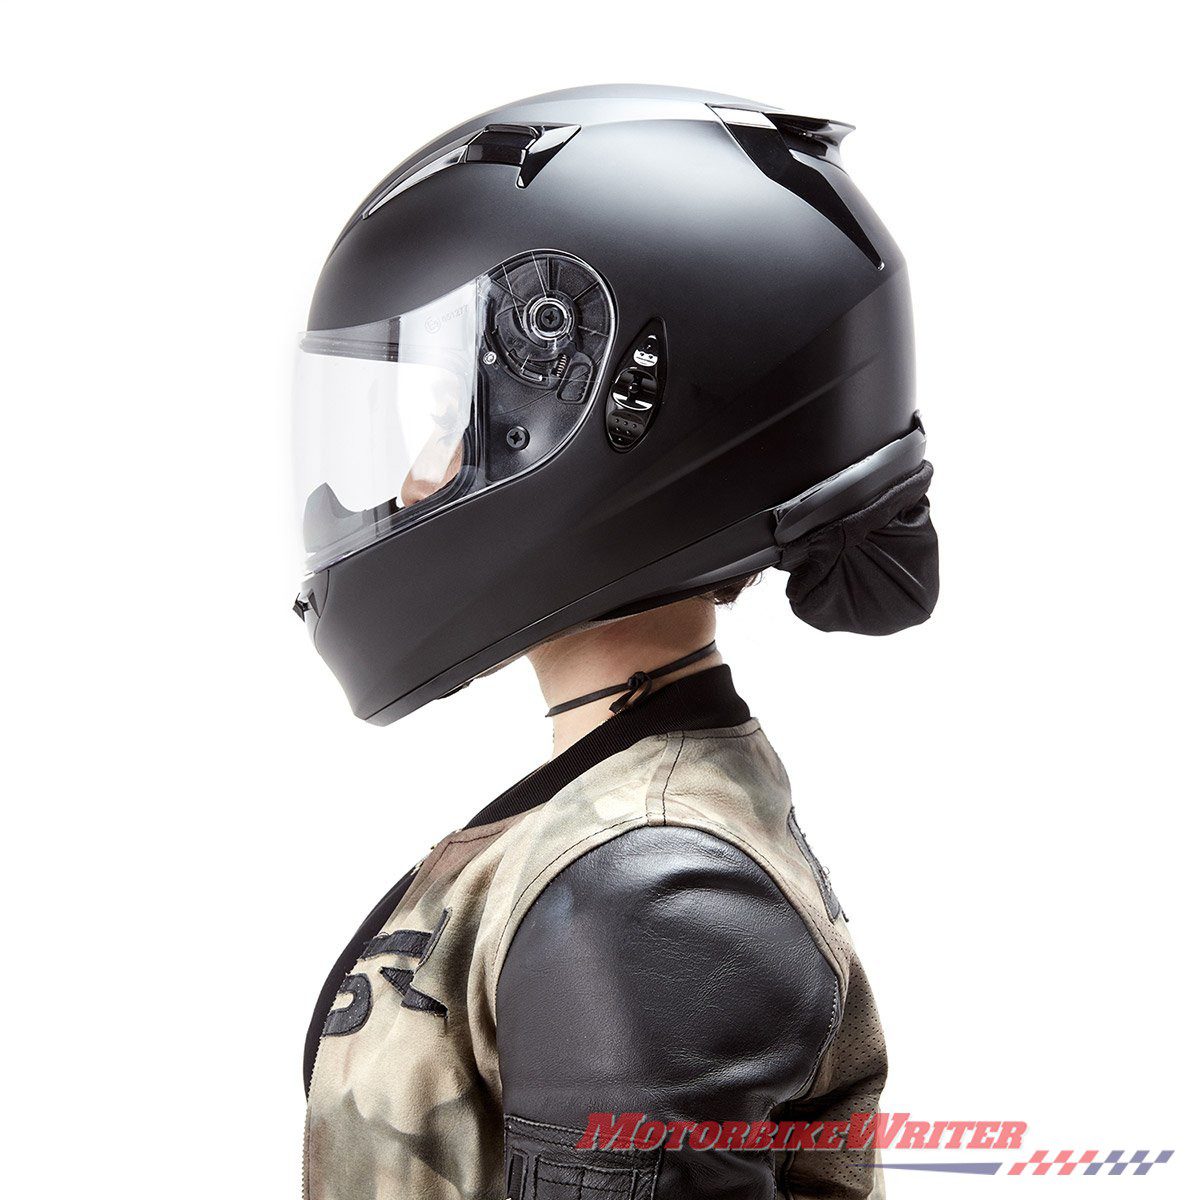 Hightail solves helmet hair issue - webBikeWorld